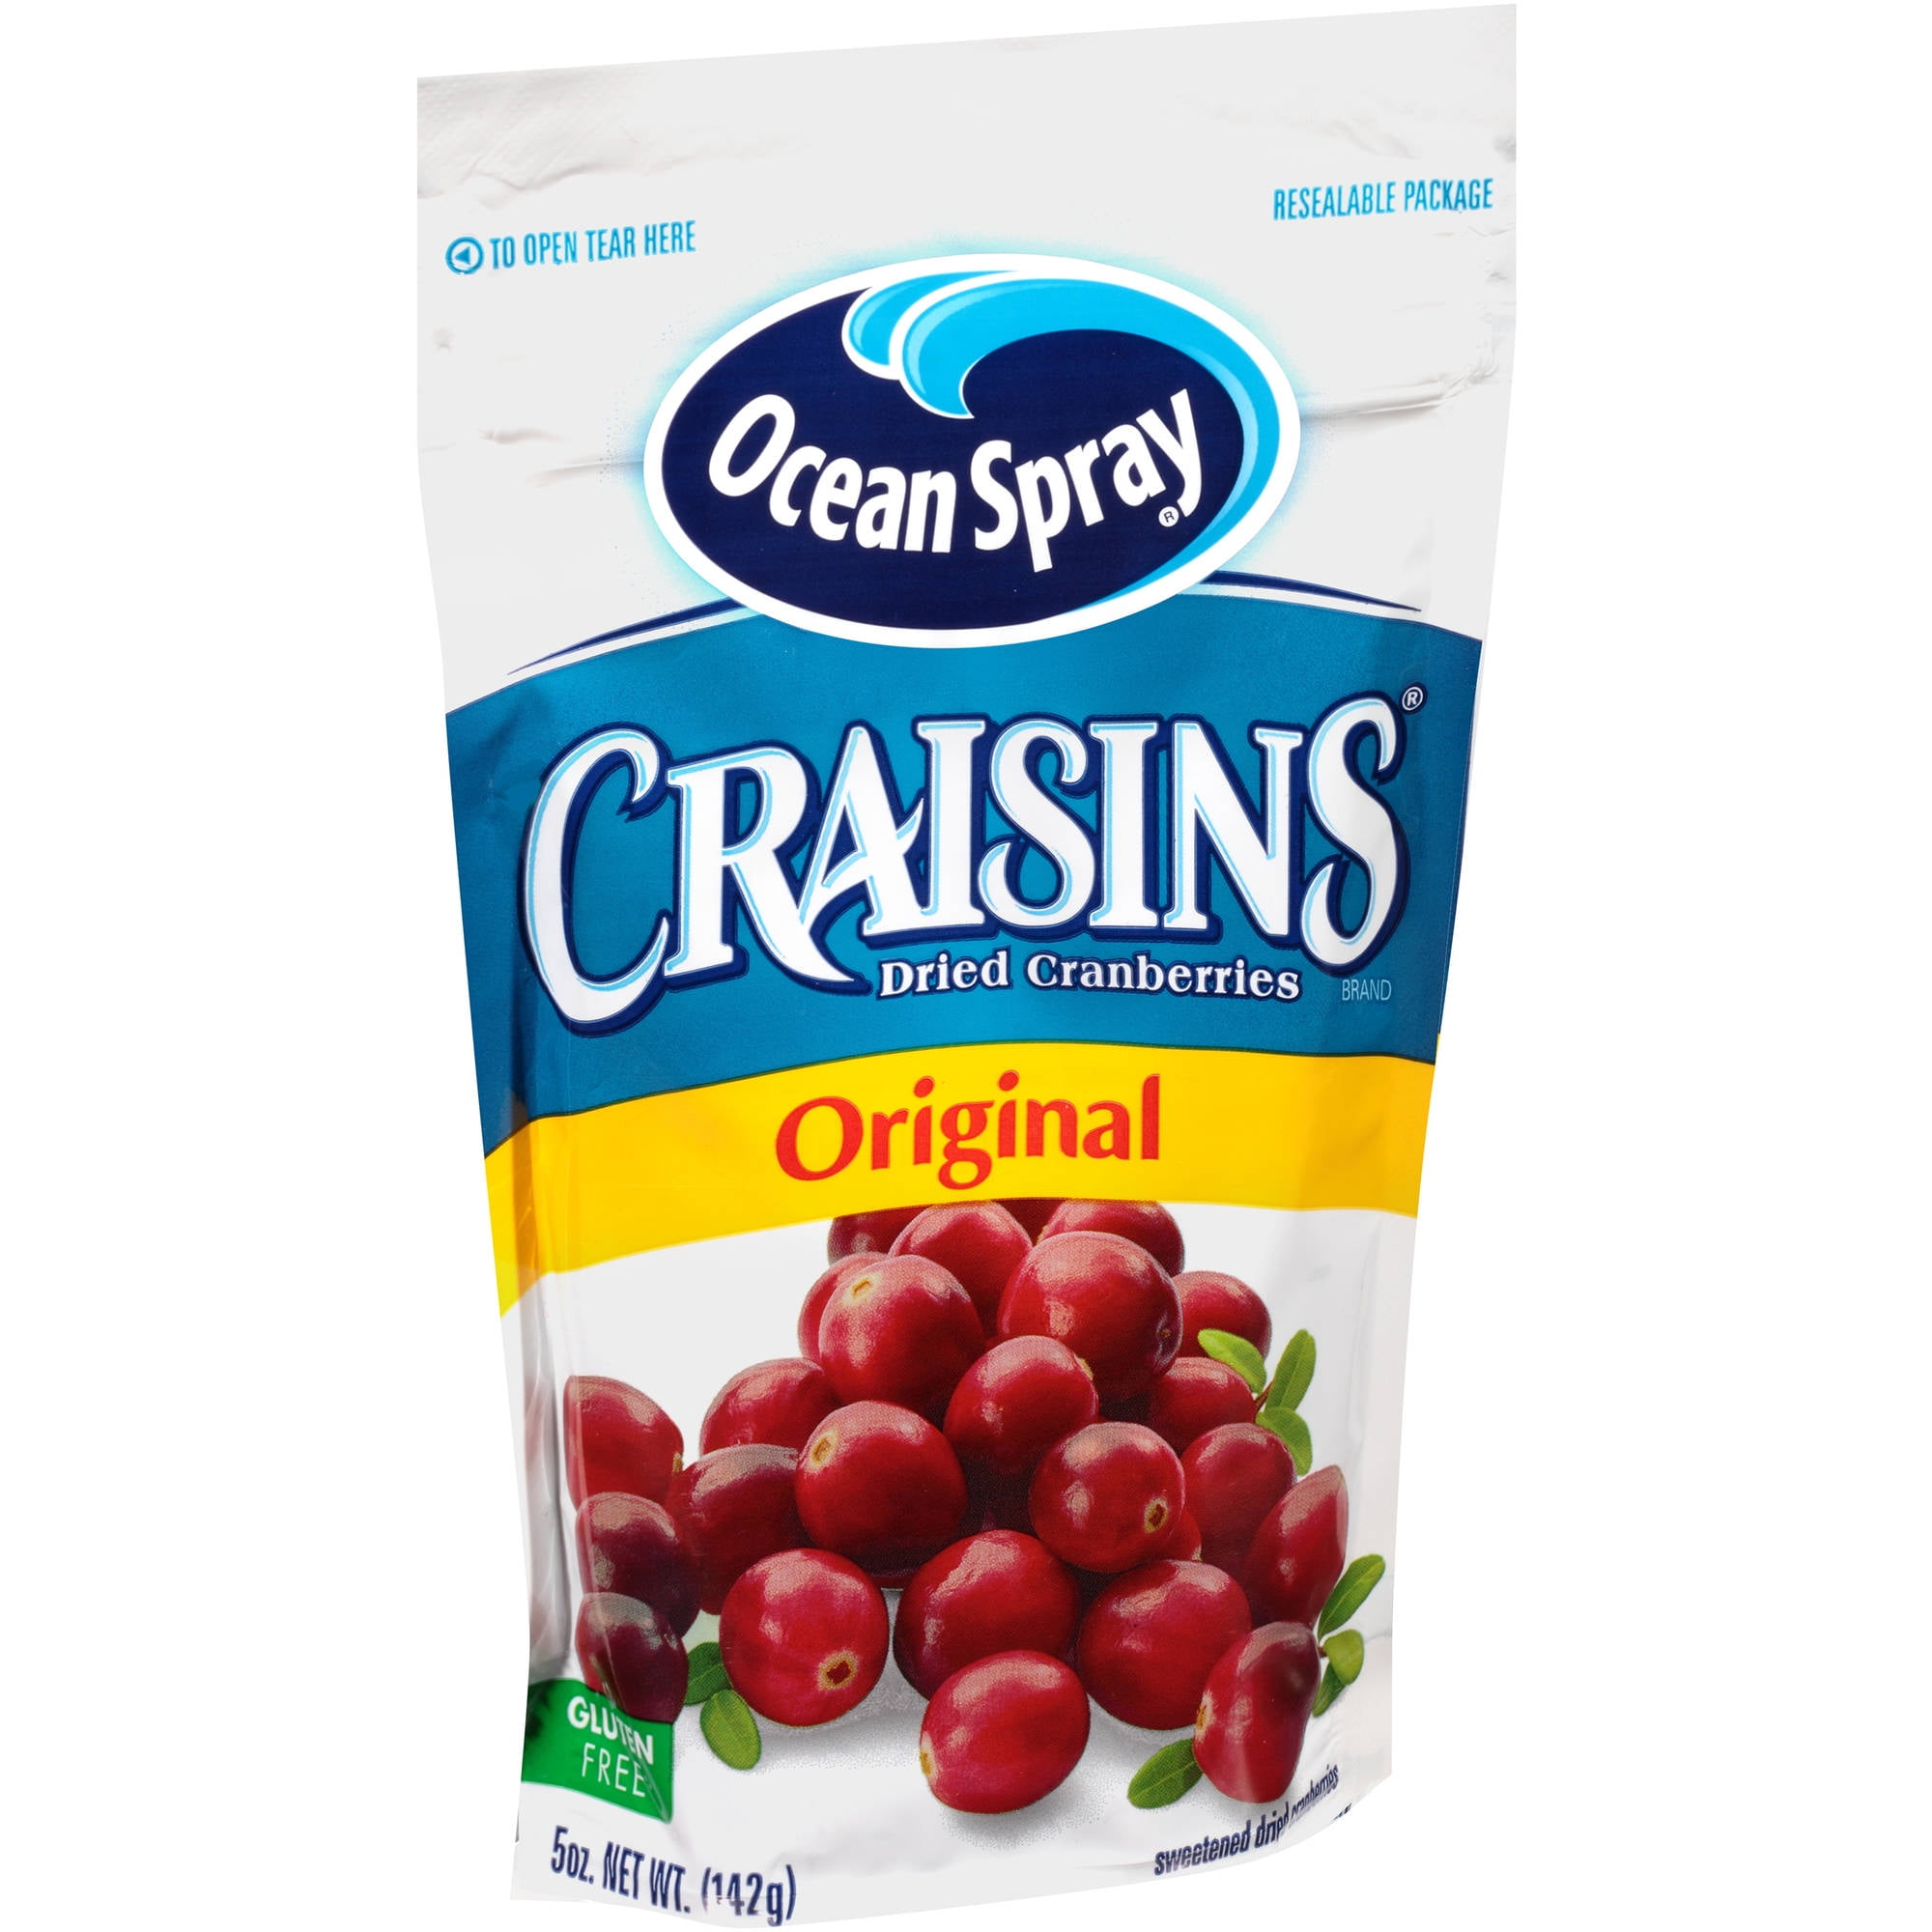 Craisins Original Dried Cranberries, 5 oz - Walmart.com